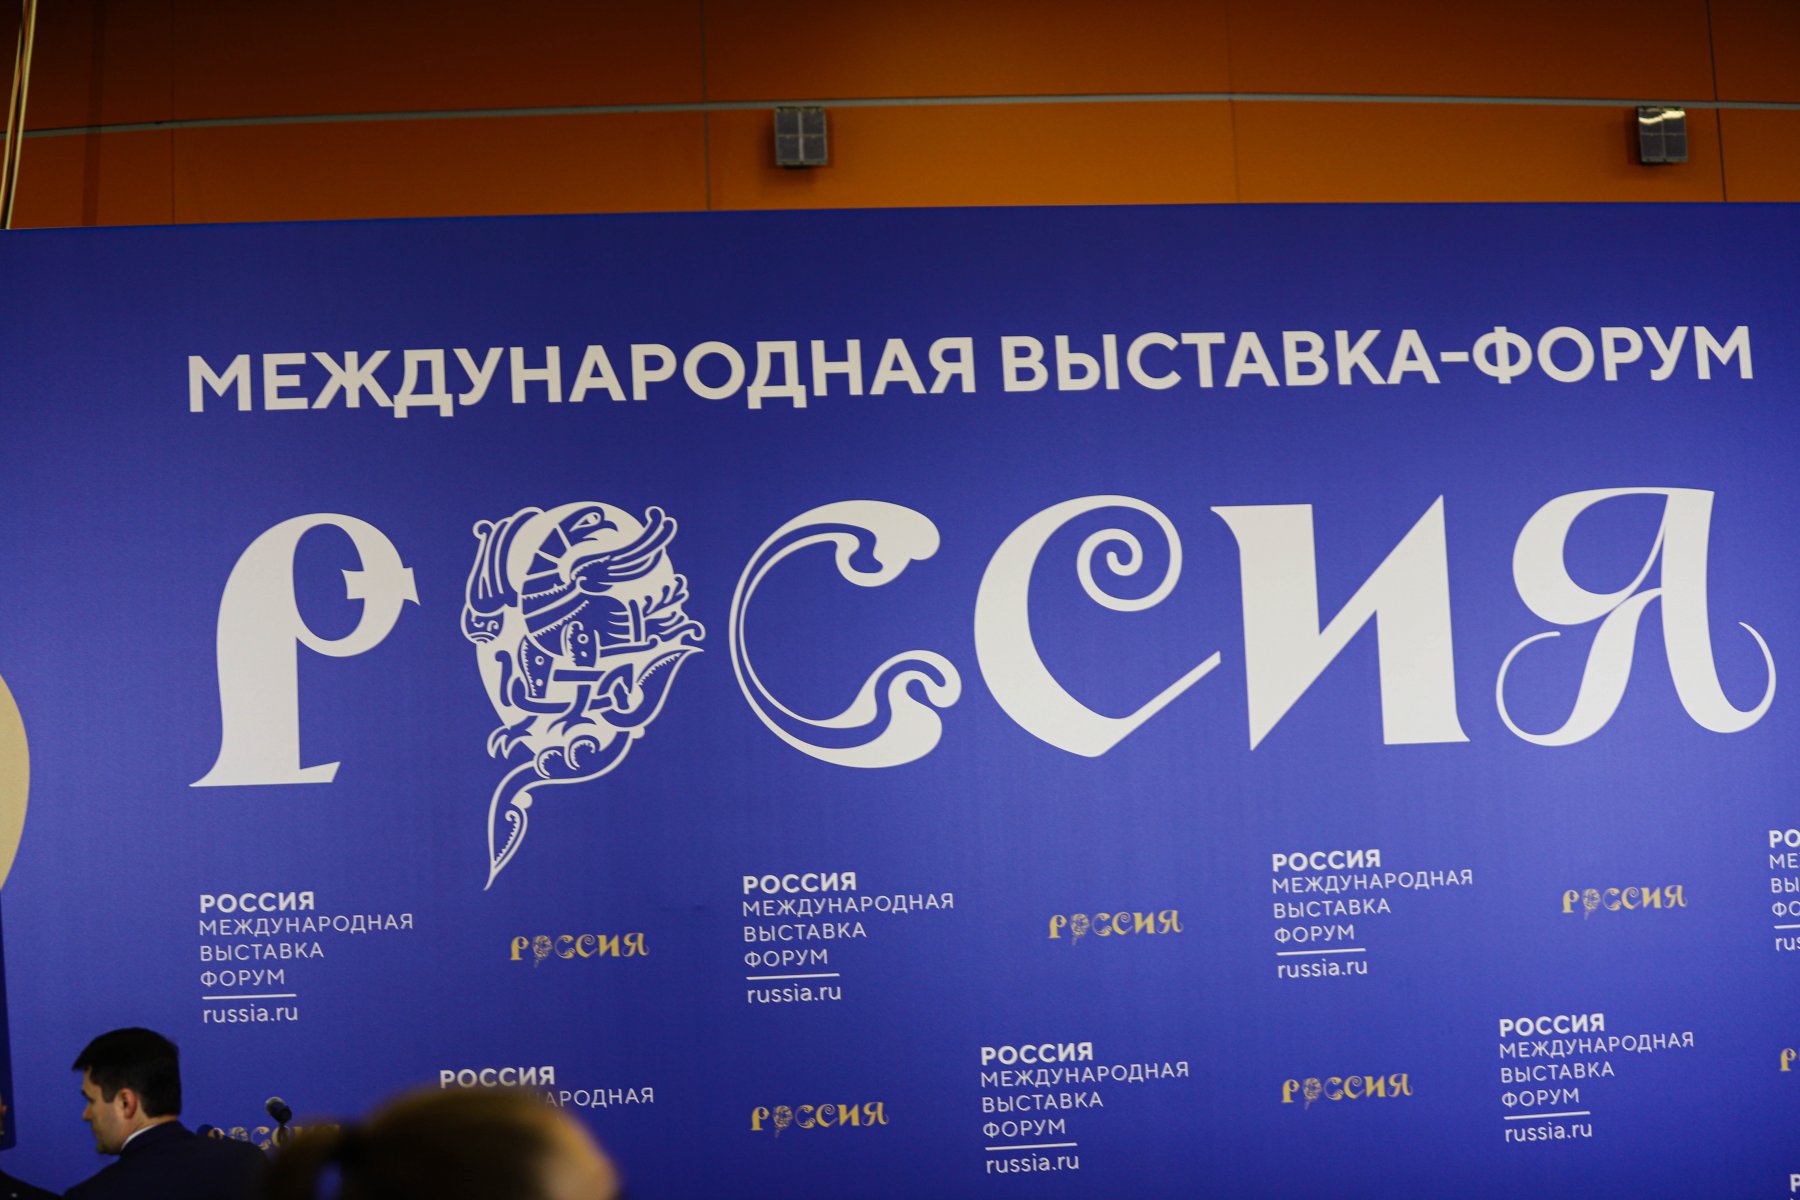 Выставку-форум «Россия» посетили 18,5 млн человек